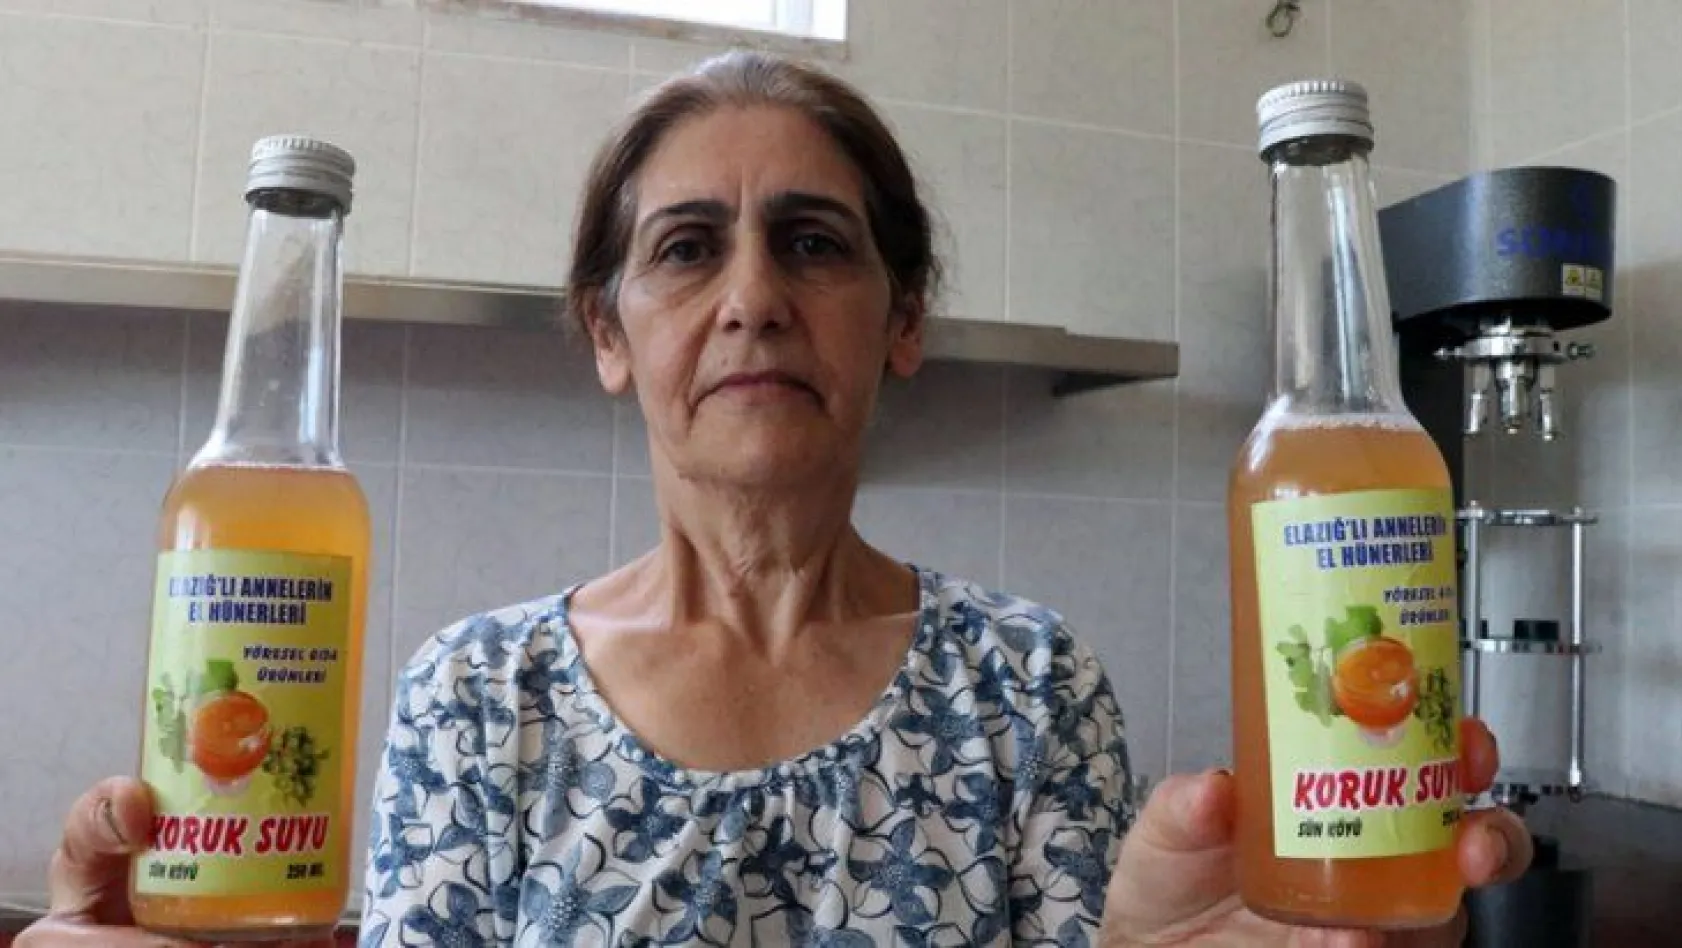 Şifalı üzüm suyu kadınların elinde hayat buldu